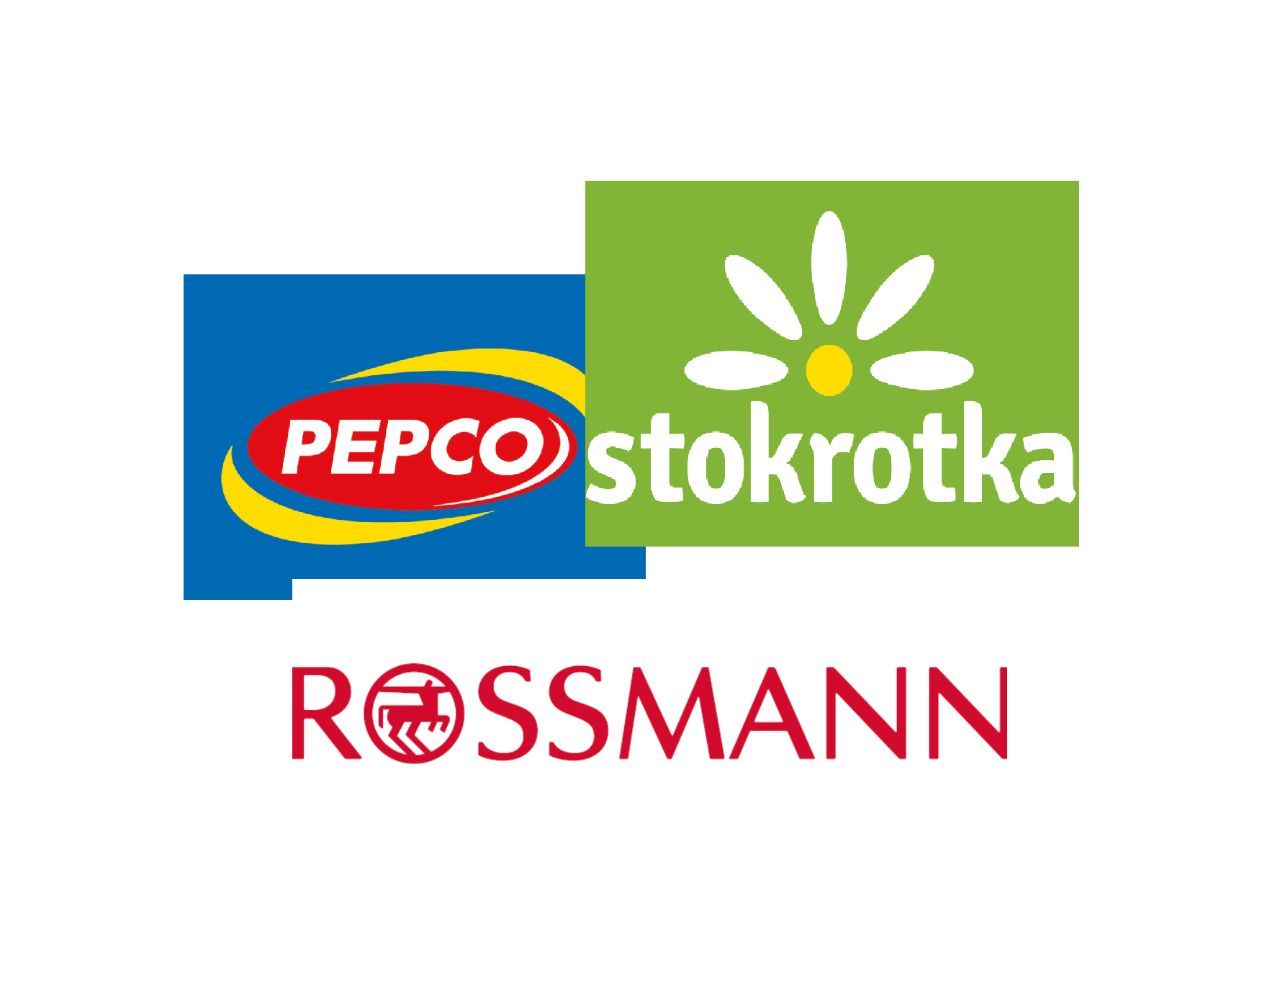 Park Handlowy Stokrotka Rossman Pepco